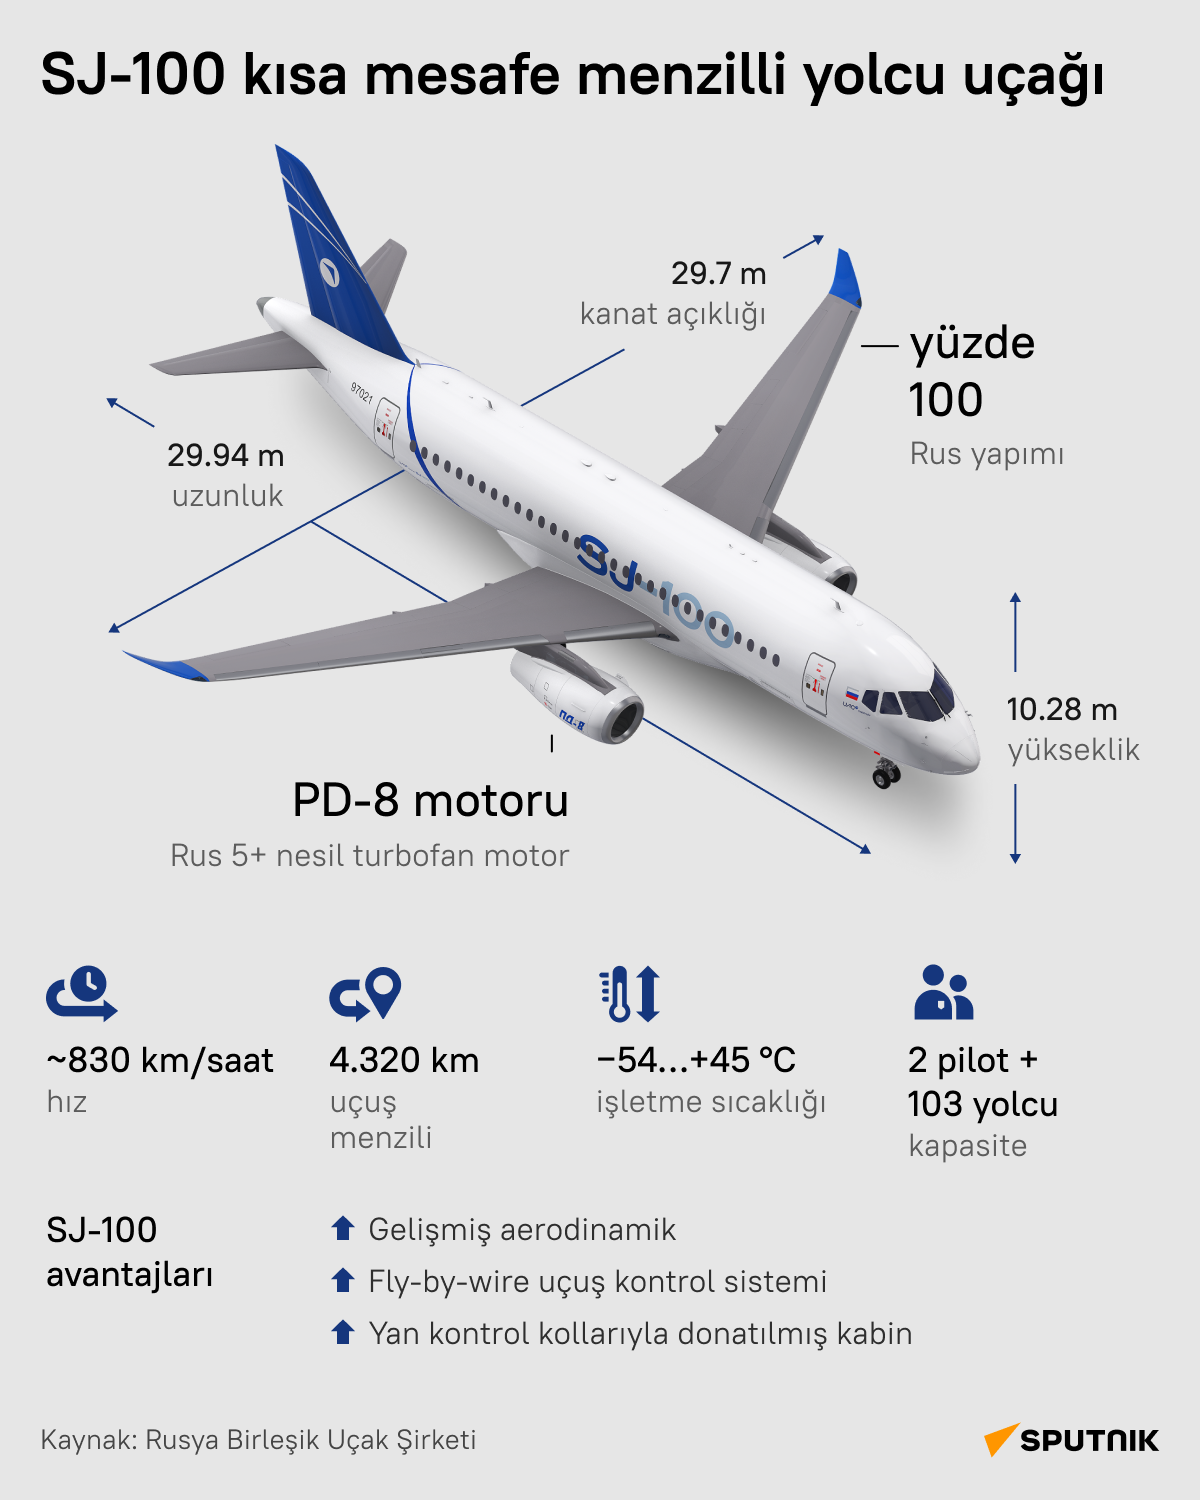 Rus SJ-100 kısa mesafe menzilli yolcu uçağının teknik özellikleri neler? - Sputnik Türkiye